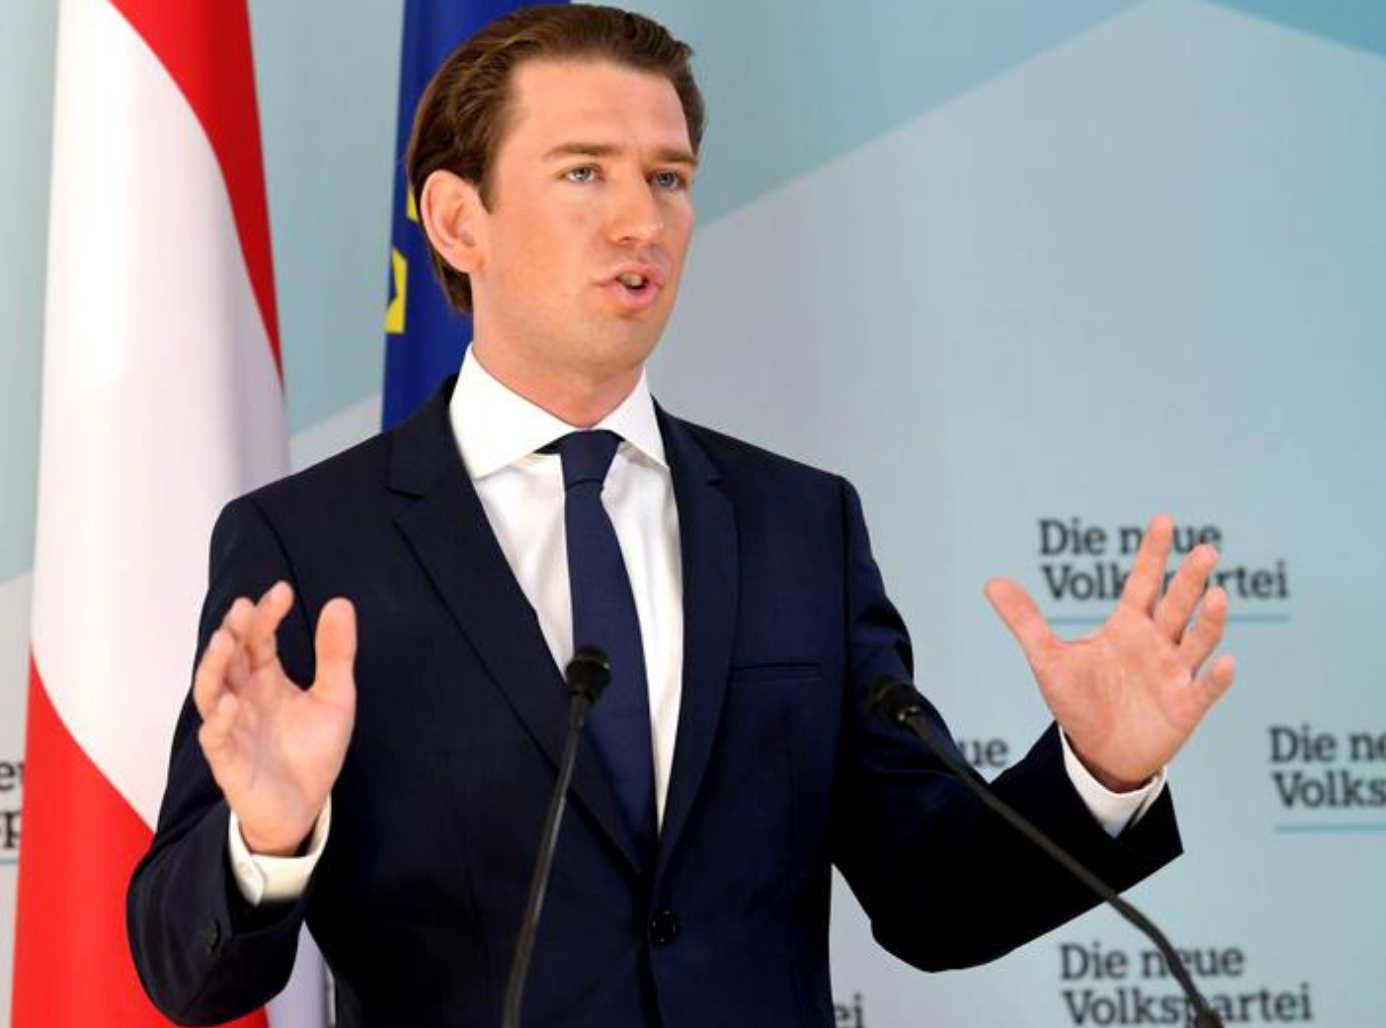 Criză politică din Austria se adâncește. Toţi miniştrii de extremă dreapta demisionează din guvern